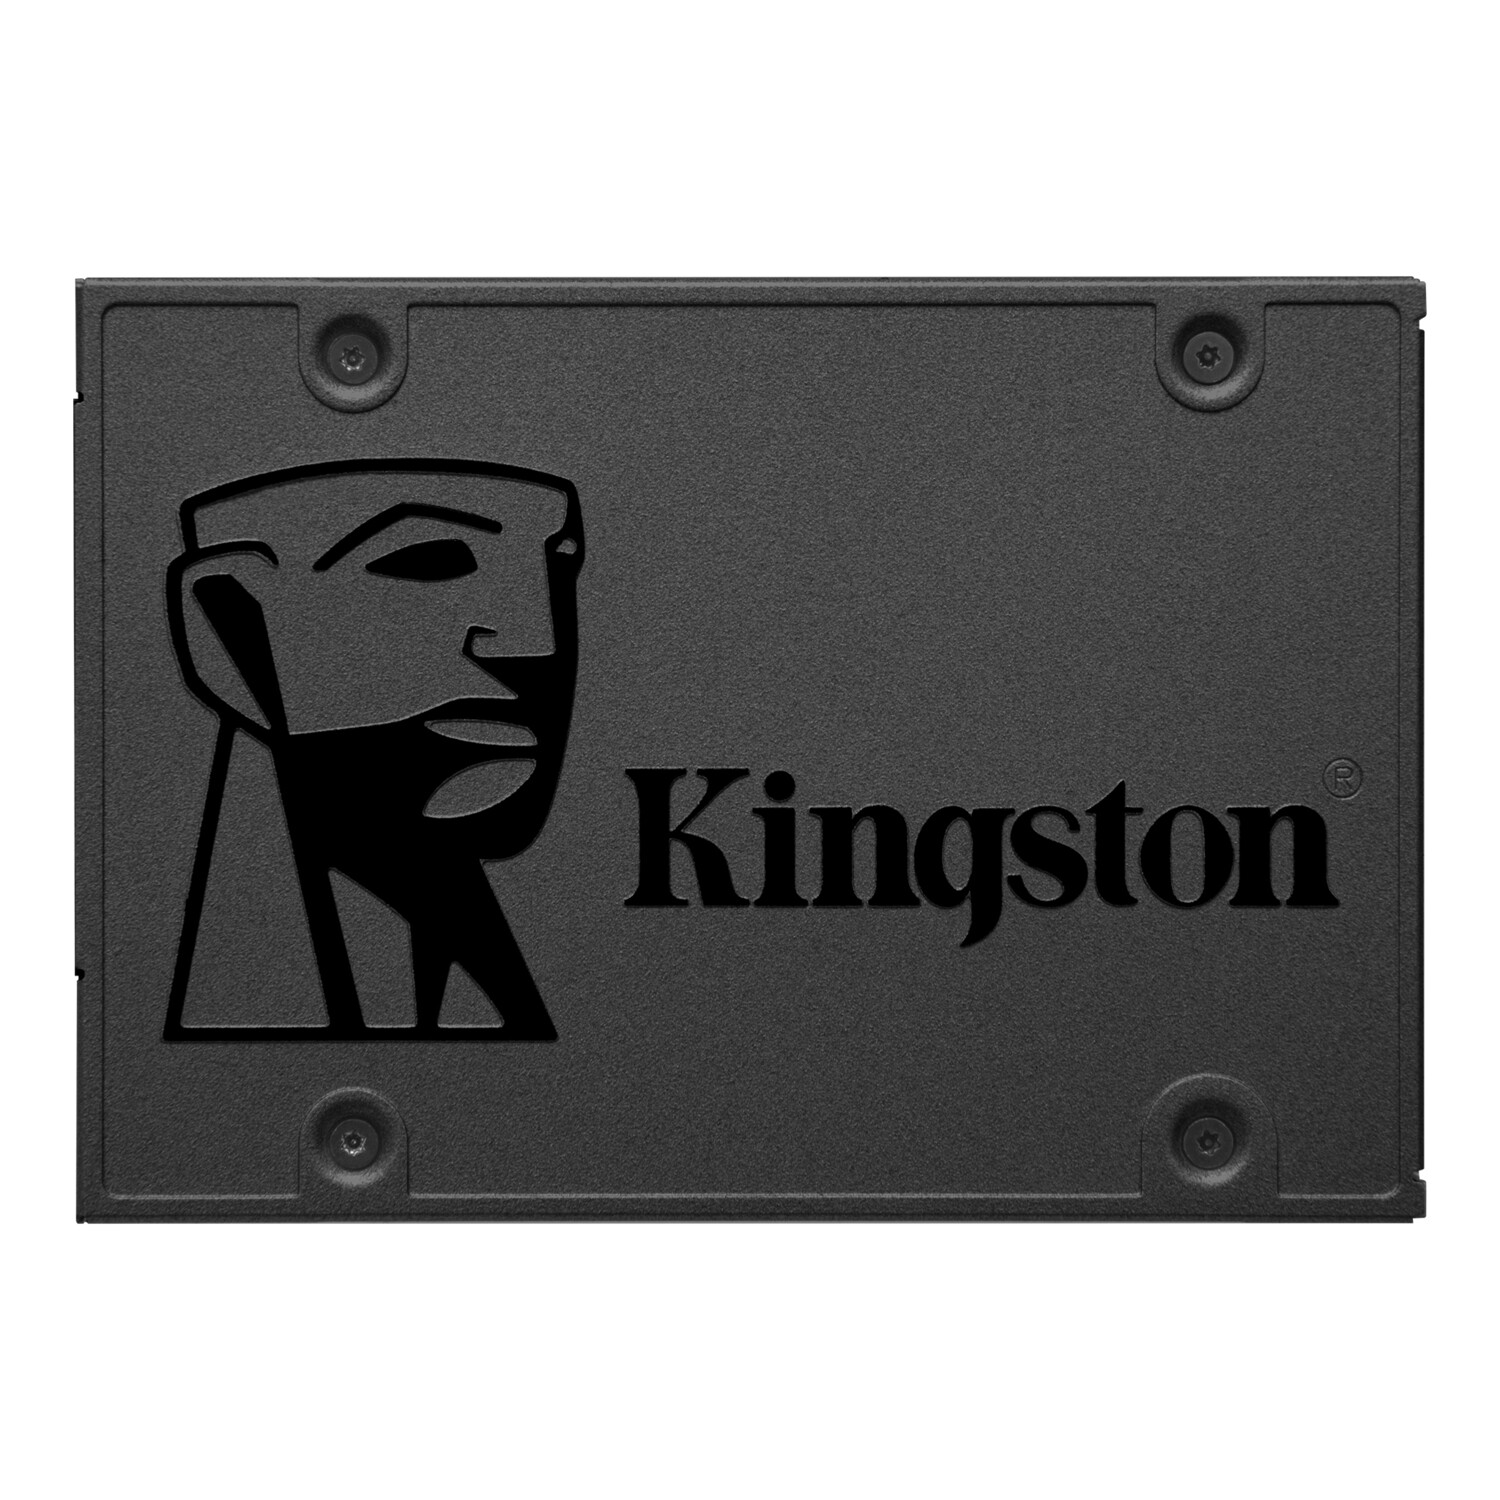 KINGSTON A400 480GB DISCO DE ESTADO SOLIDO